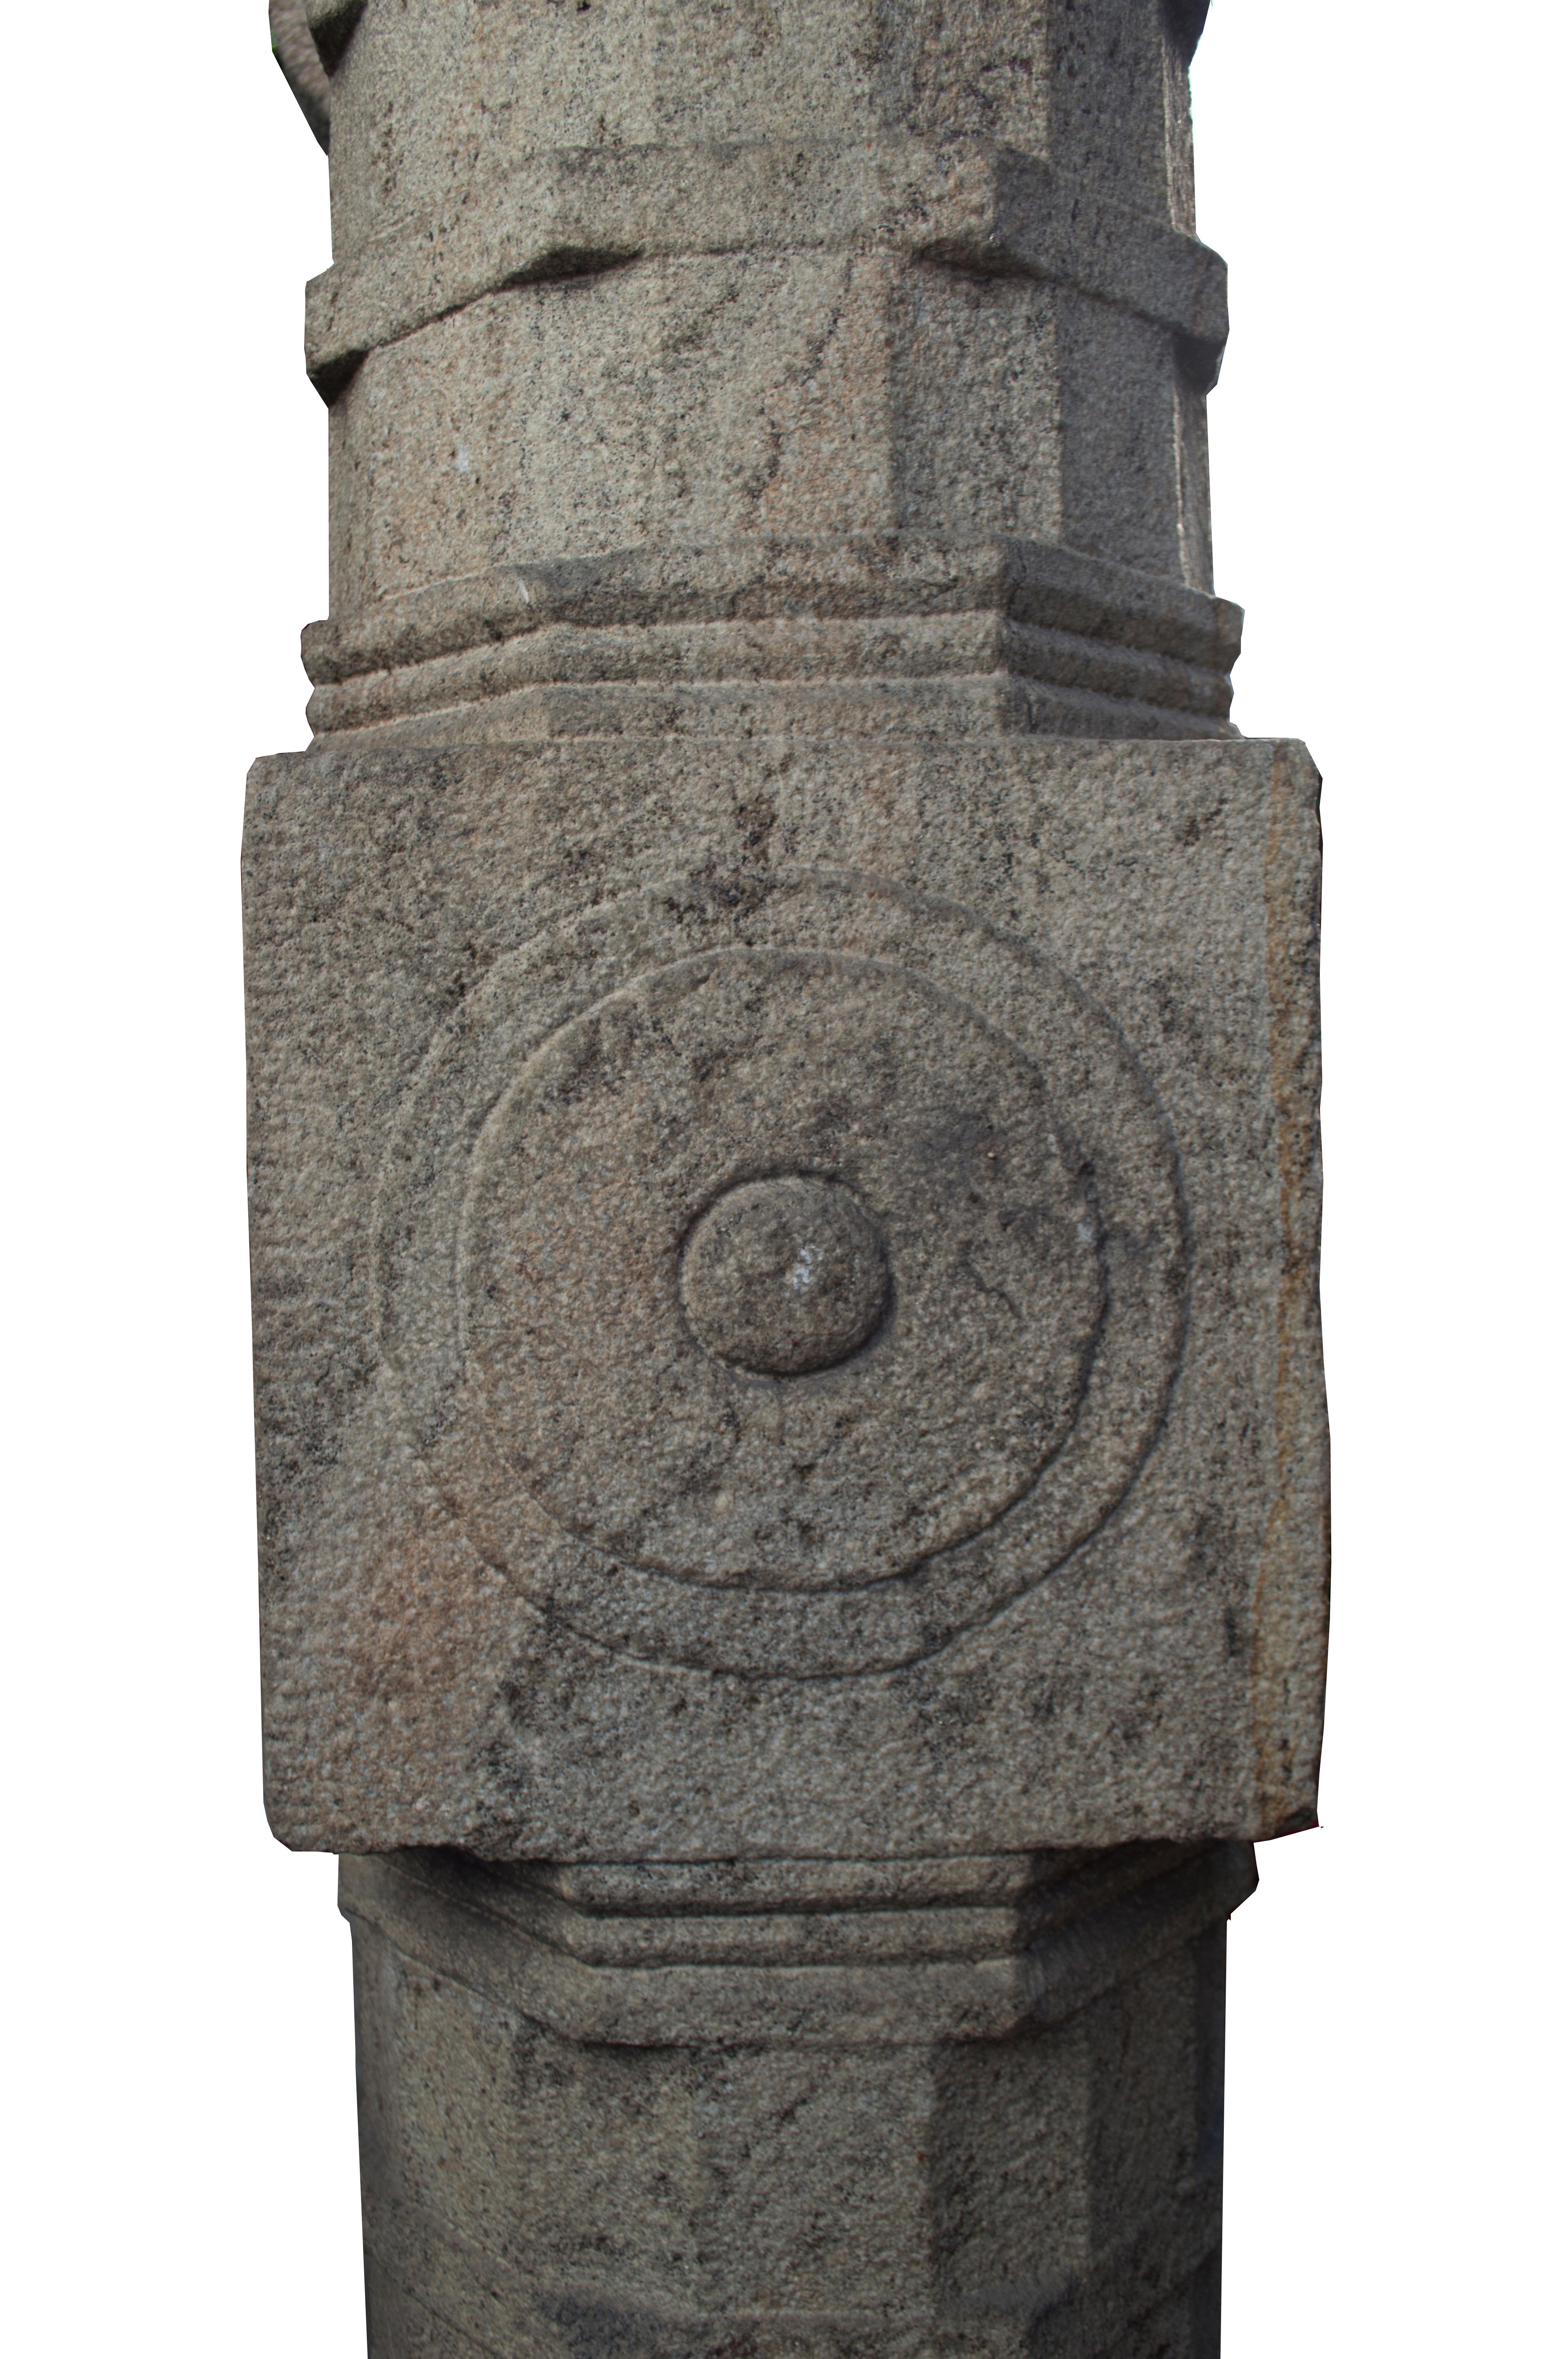 stone pillar in kerala